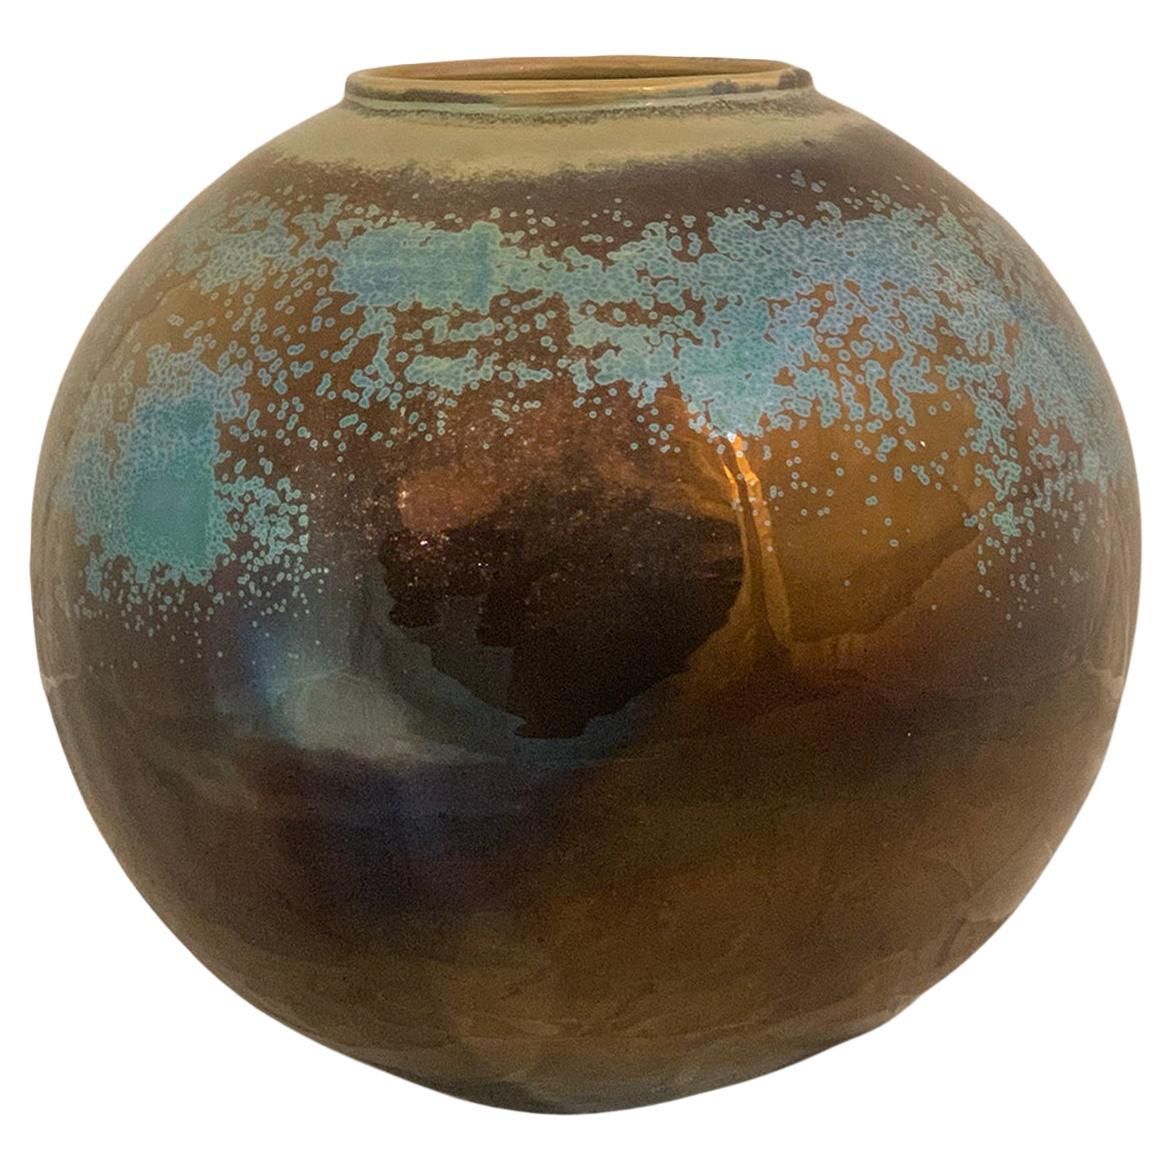 Thirties, Glazed Ceramic Vase, 'MCA' Albissola Manufacture